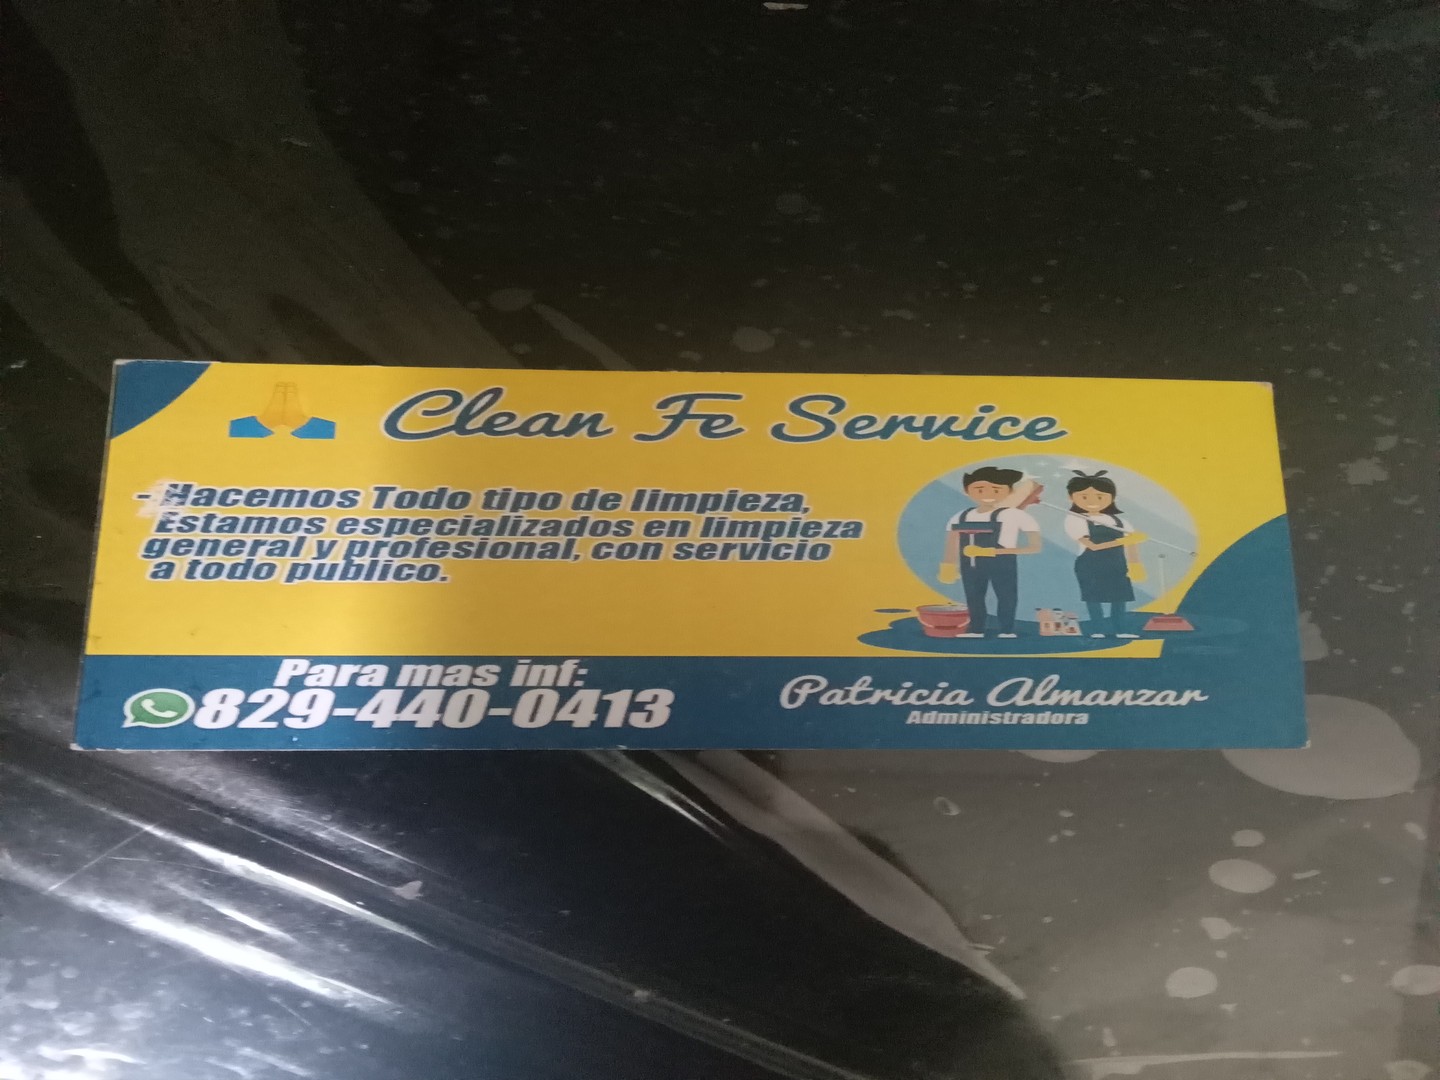 servicios profesionales - Hacemos todo tipo de limpieza 

DIOS LES BENDIGA 